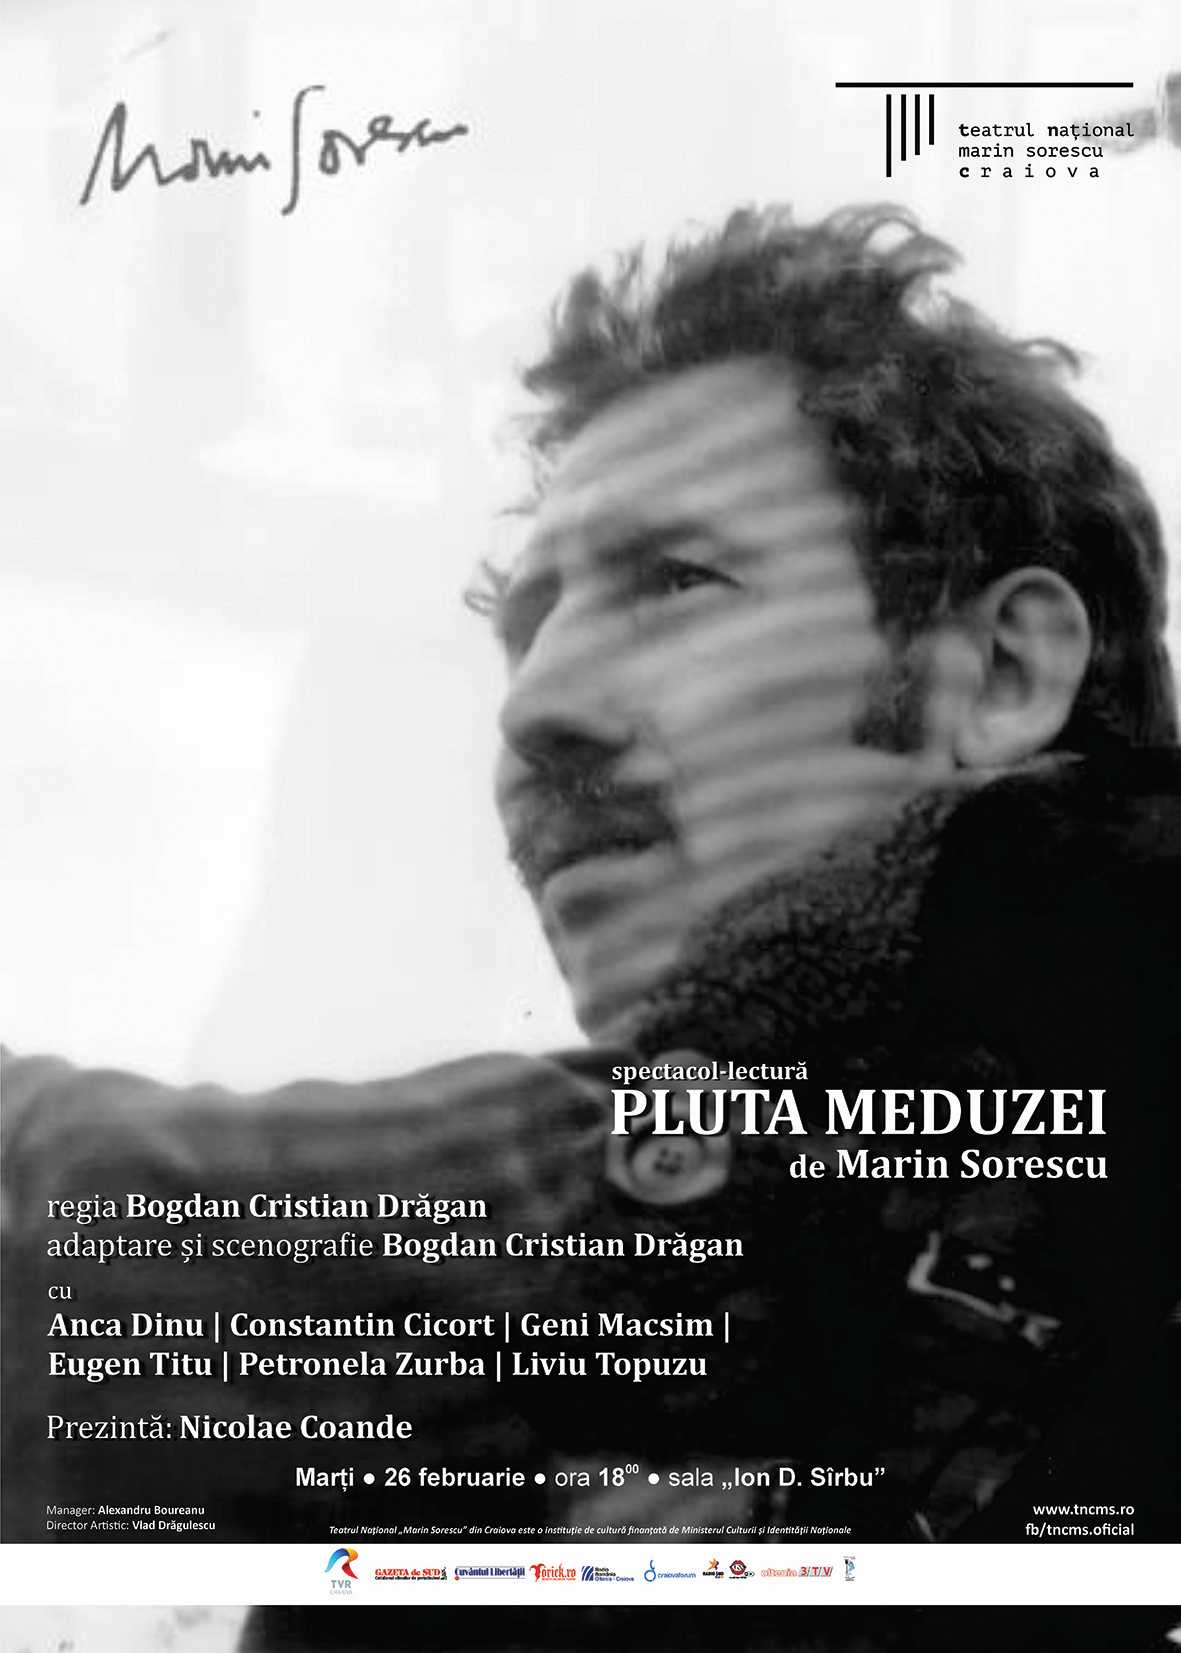 prince Reproduce To the truth Marin Sorescu – “Pluta Meduzei”, spectacol-lectură la Naționalul craiovean  - Agentia de cArte